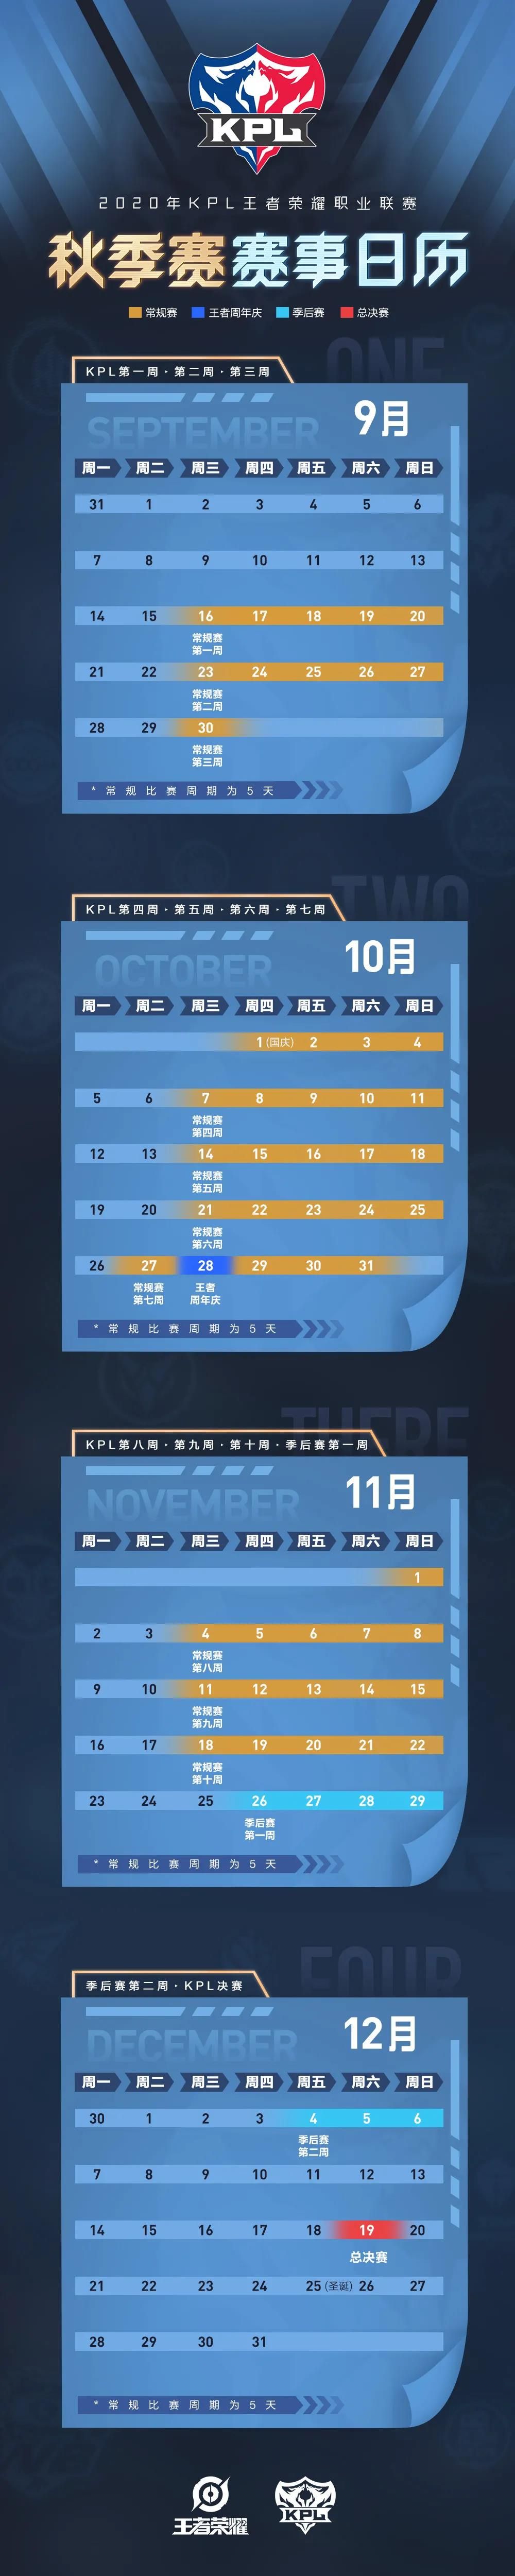 王者荣耀2020KPL秋季赛日历表一览[视频][多图]图片2